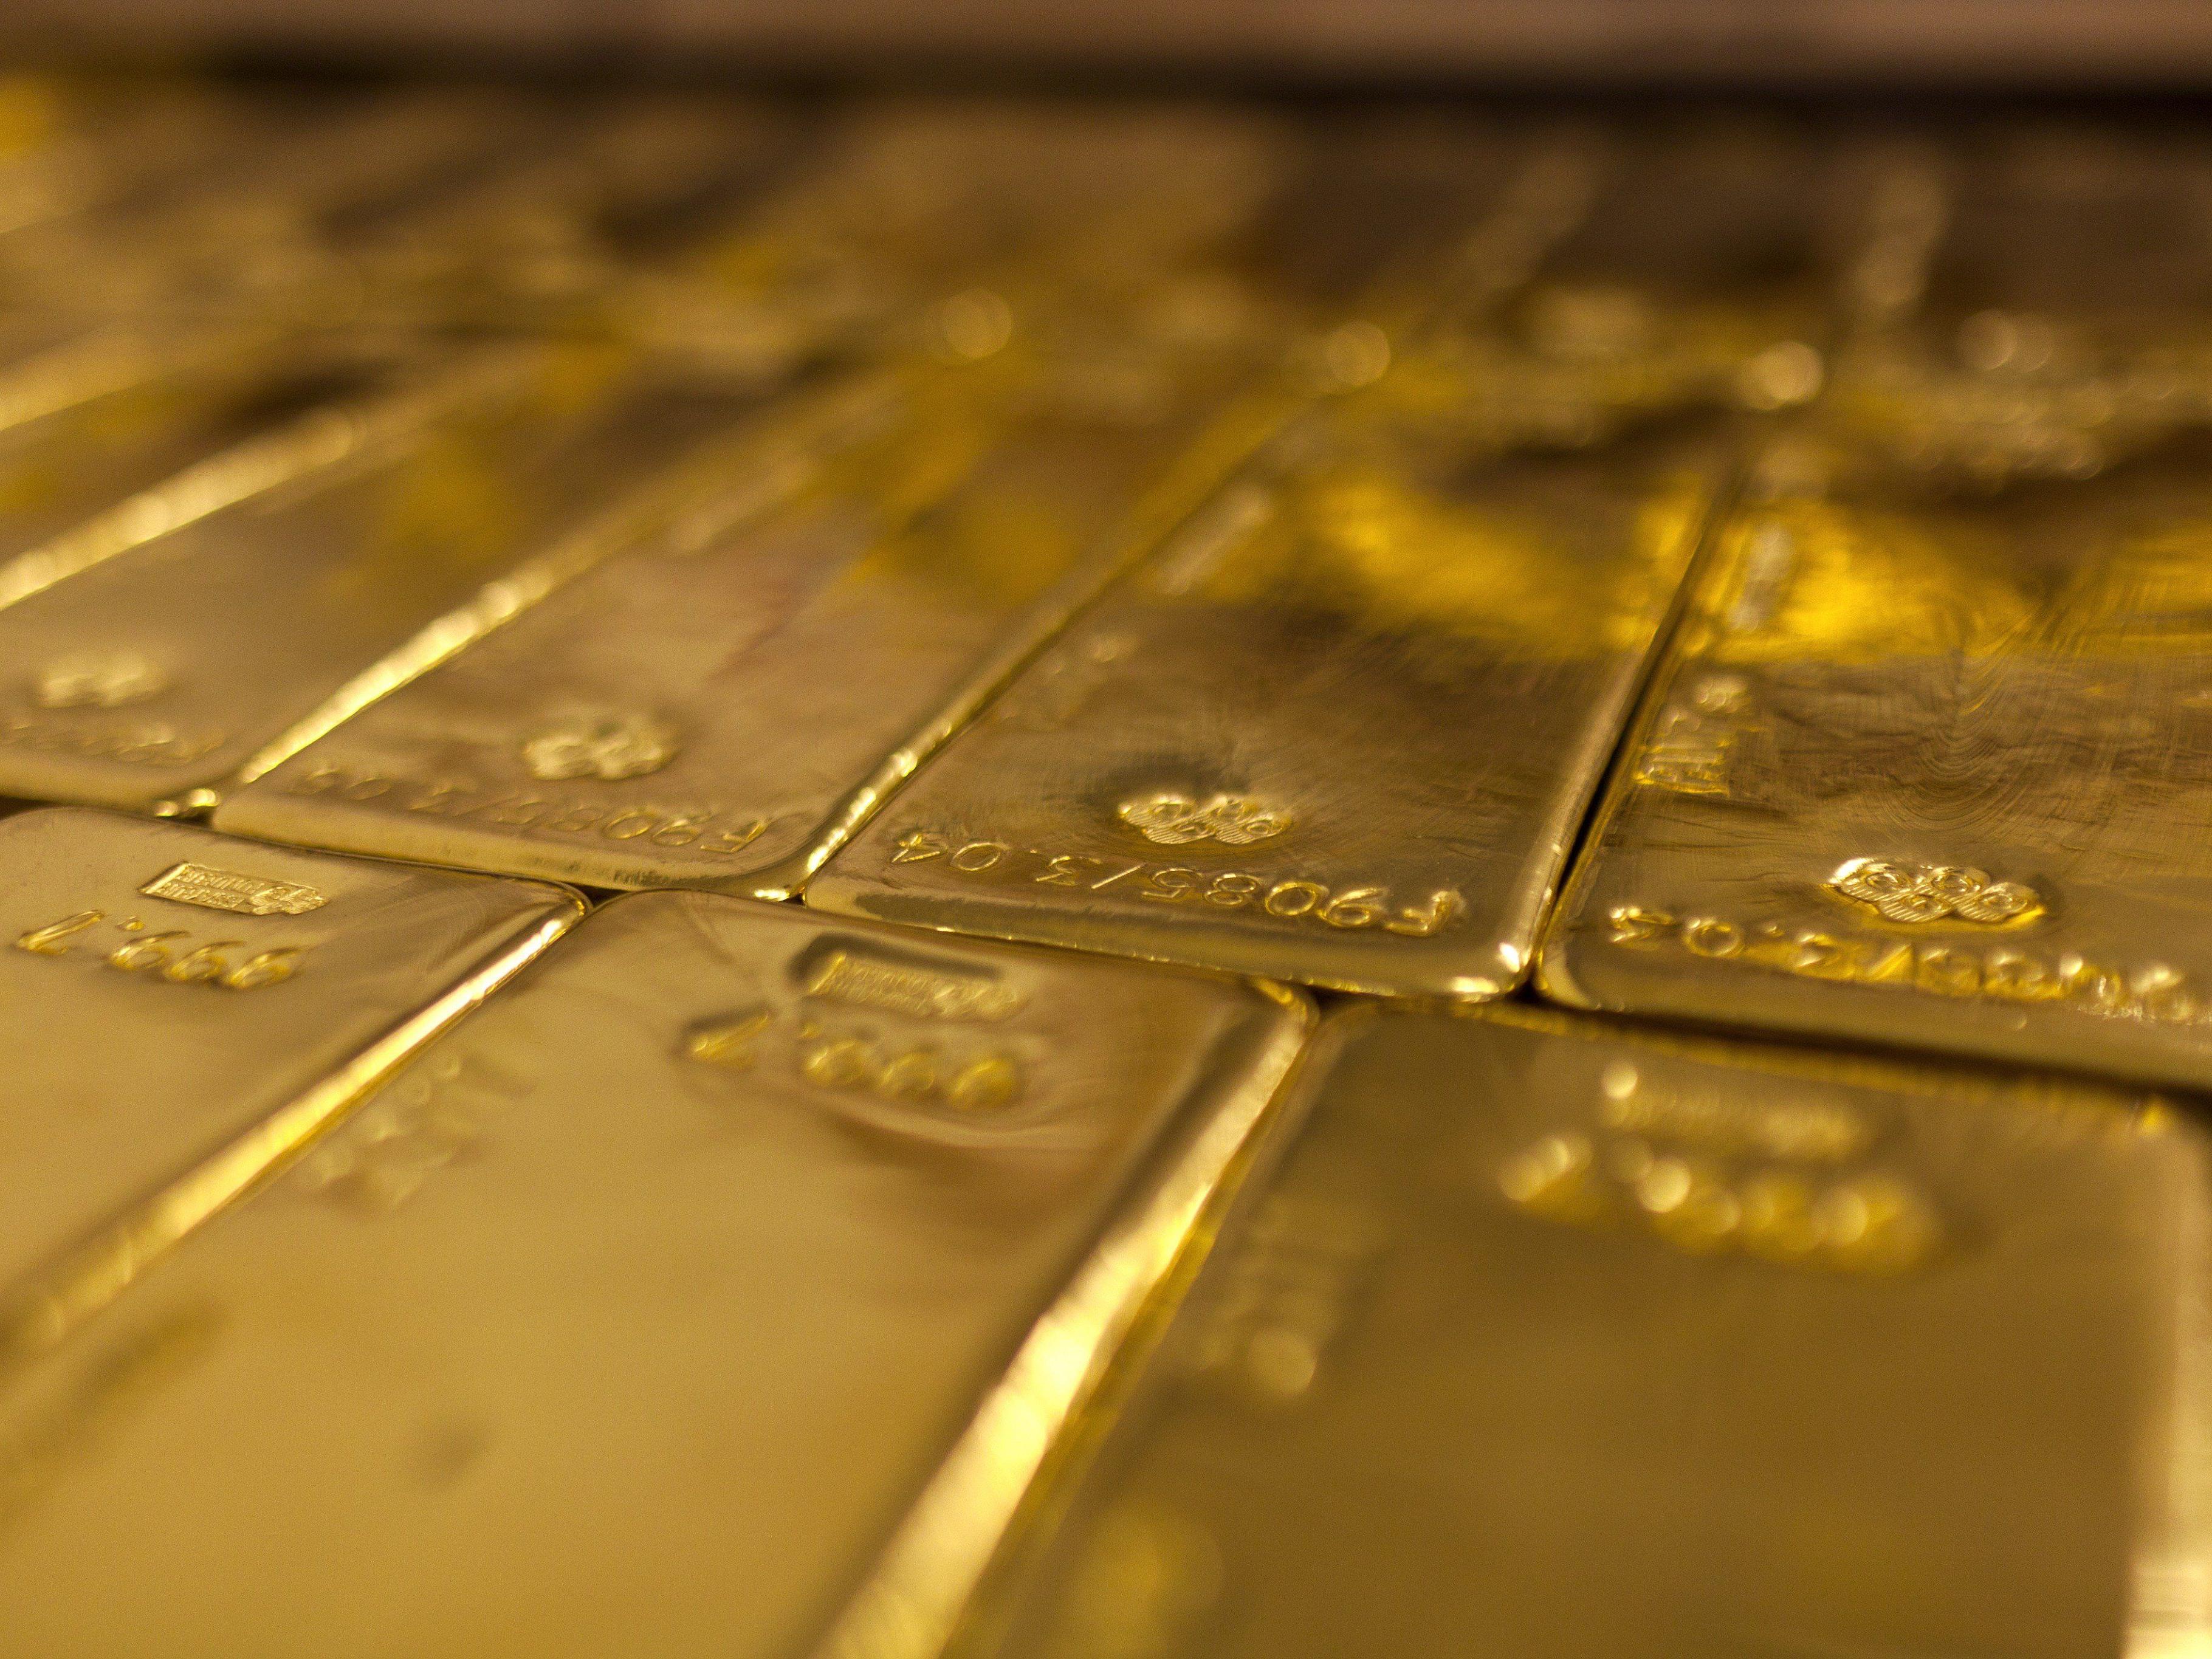 Der Wert des 25 Kilogramm schweren Goldbarrens wurde auf umgerechnet 2,15 Millionen Euro geschätzt.